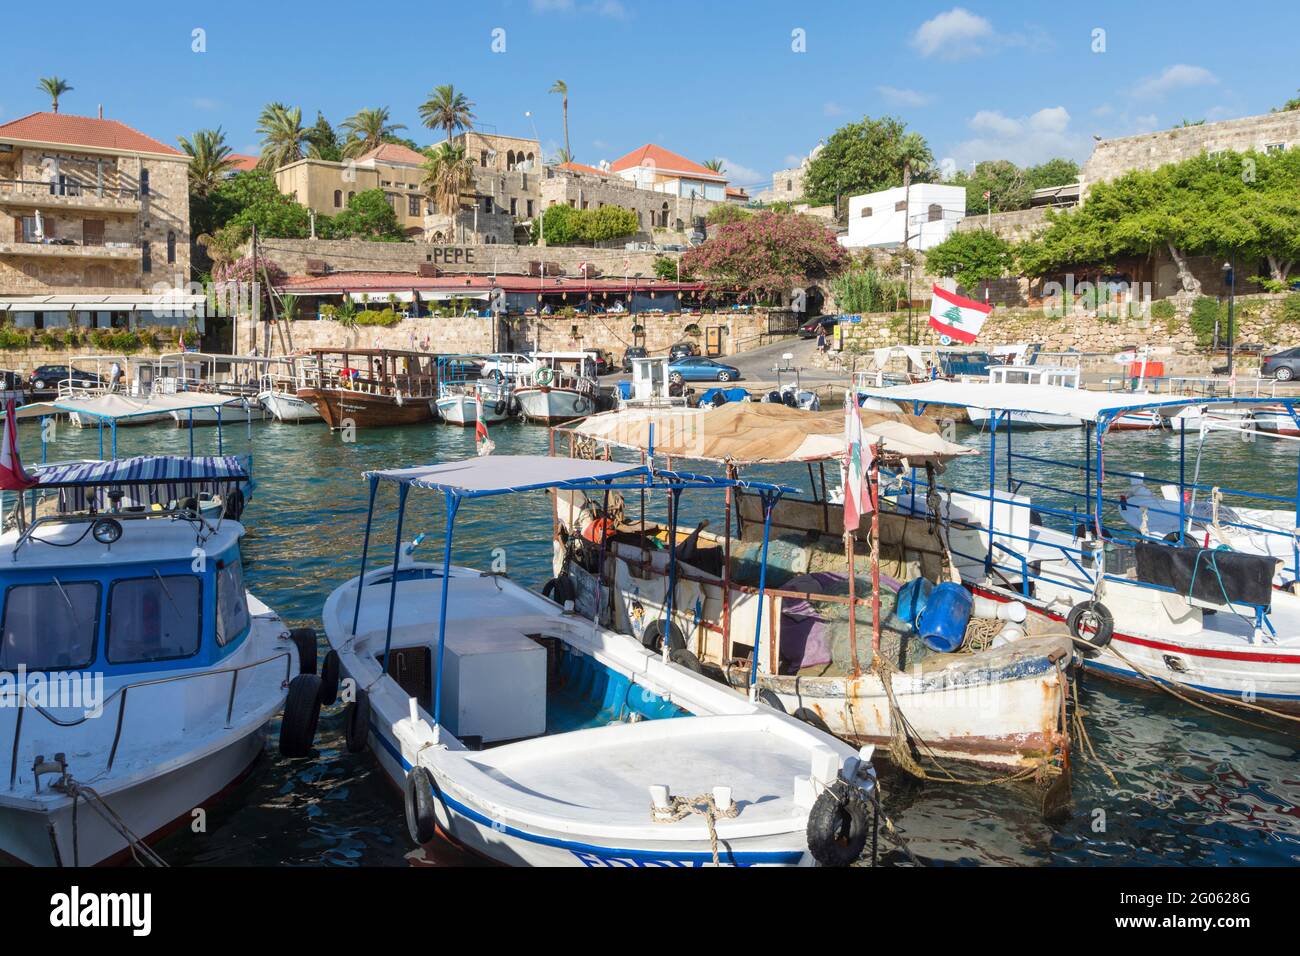 Bateaux de pêche au port de Byblos, Jbeil, Liban Banque D'Images